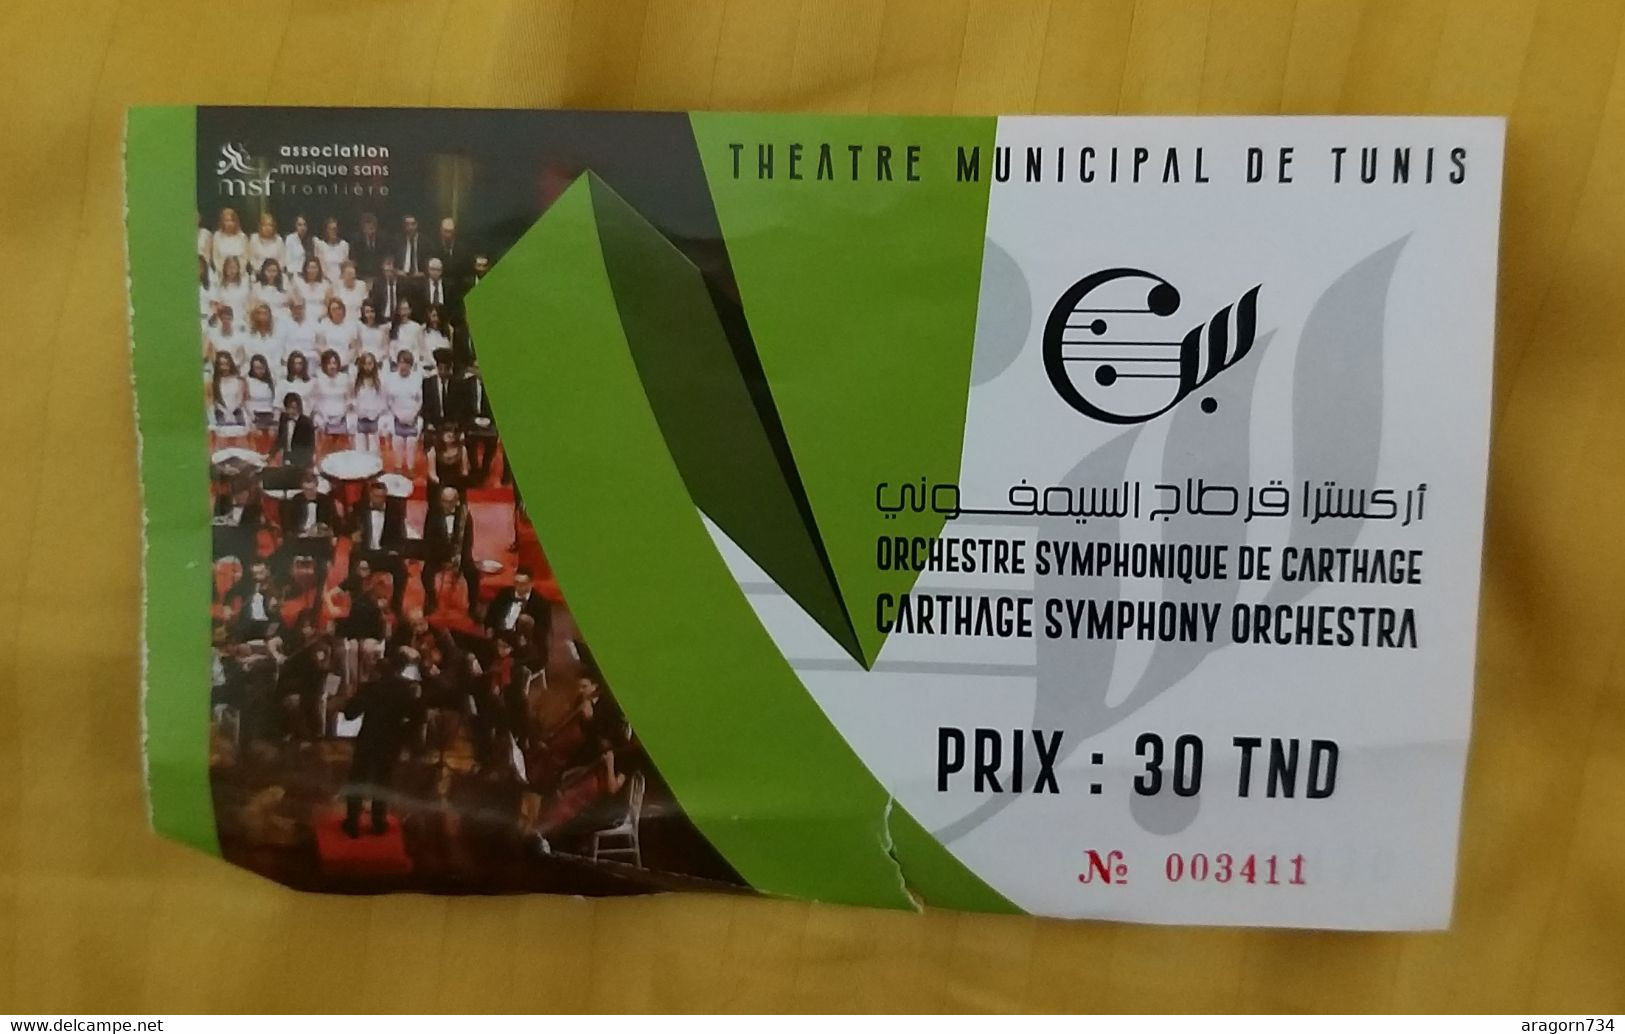 Ticket D'entrée Théâtre Municipal De Tunis - Orchestre Symphonique De Carthage 2022 - Tunisie - Concert Tickets